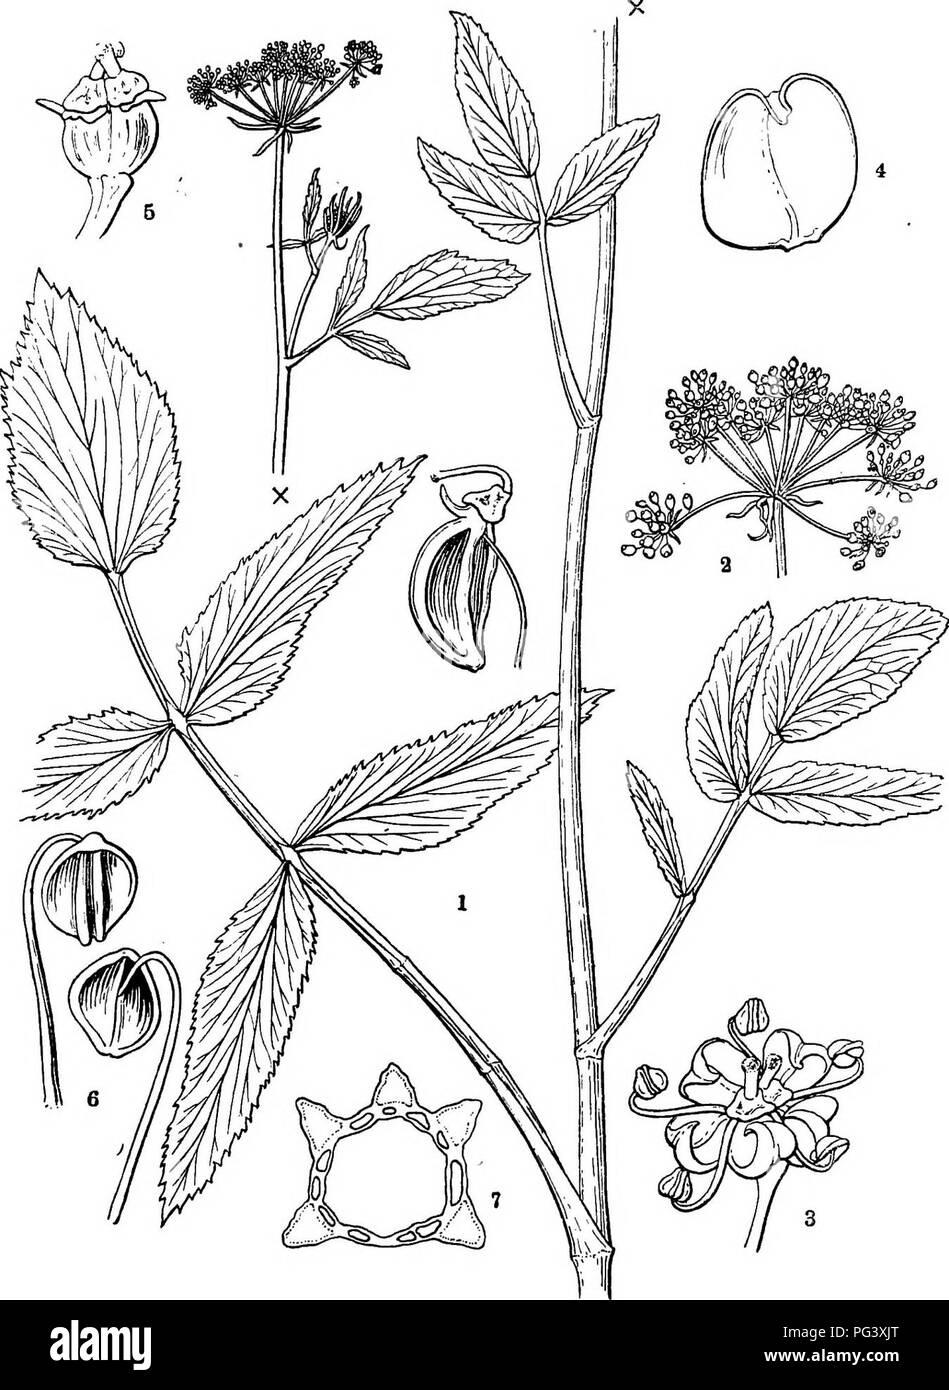 . Icones plantarum formosanarum non nec ad floram contributiones et formosanam ; ou, de l'Icones de Formosa, les plantes et les matériaux pour une flore de l'île, basé sur une étude de la collection de l'étude botanique du gouvernement de Formosa. La botanique. TMEEUJIEERM. 17. Fig. 9, formosanum Sium Hayata ; 1, » branche xf ; 2, un umbella ; 3, une fleur ; je, un pétale ; 5, une fleur, des pétales ; 6, une étamine, vu de différents côtés ; 7, section d'un carpelle mûr.. Veuillez noter que ces images sont extraites de la page numérisée des images qui peuvent avoir été retouchées numériquement pour plus de lisibilité -. Banque D'Images